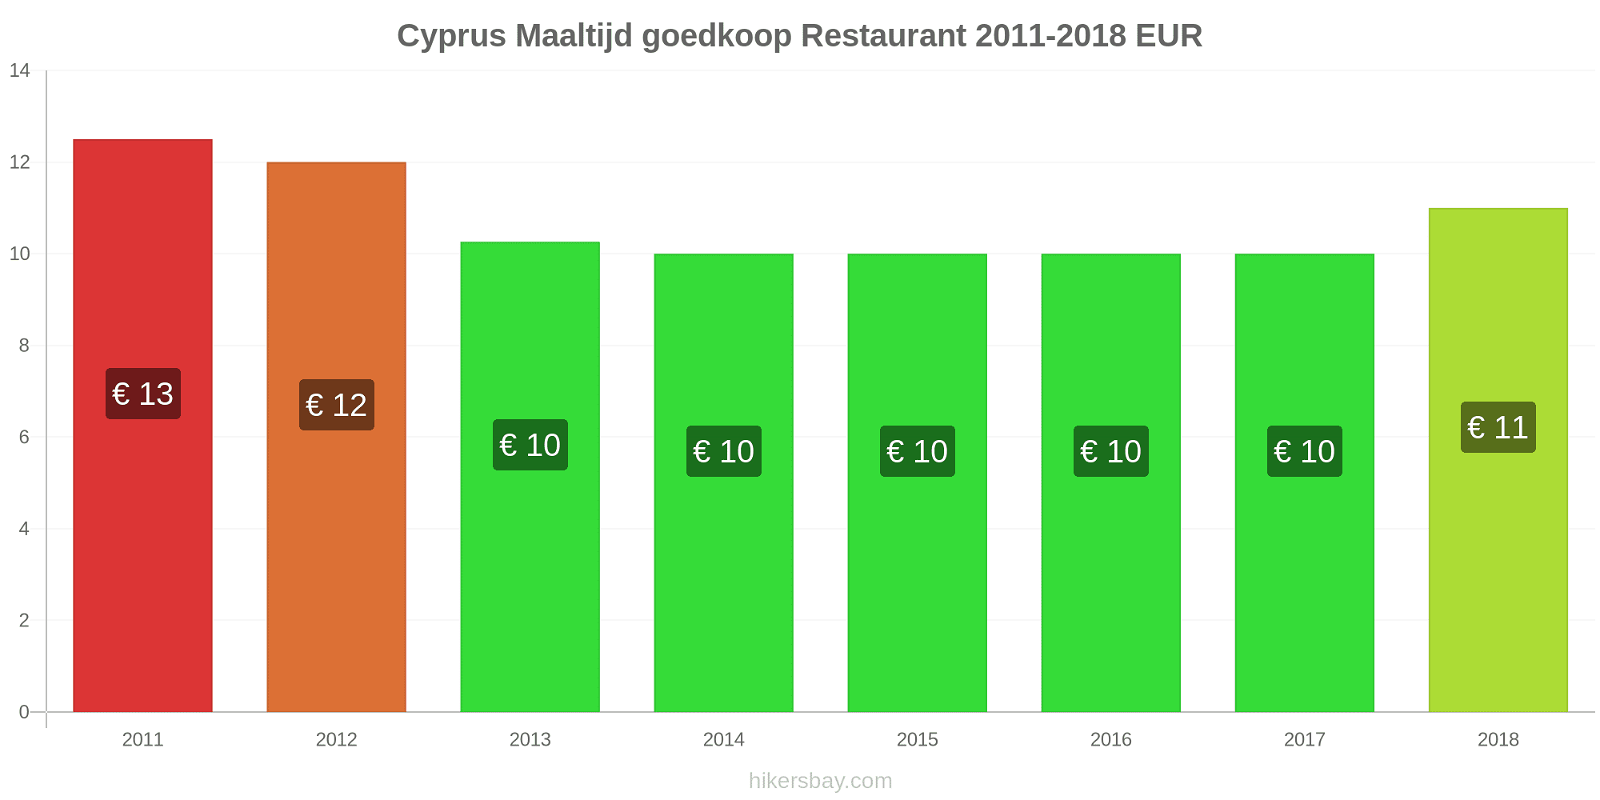 Cyprus prijswijzigingen Maaltijd in een goedkoop restaurant hikersbay.com